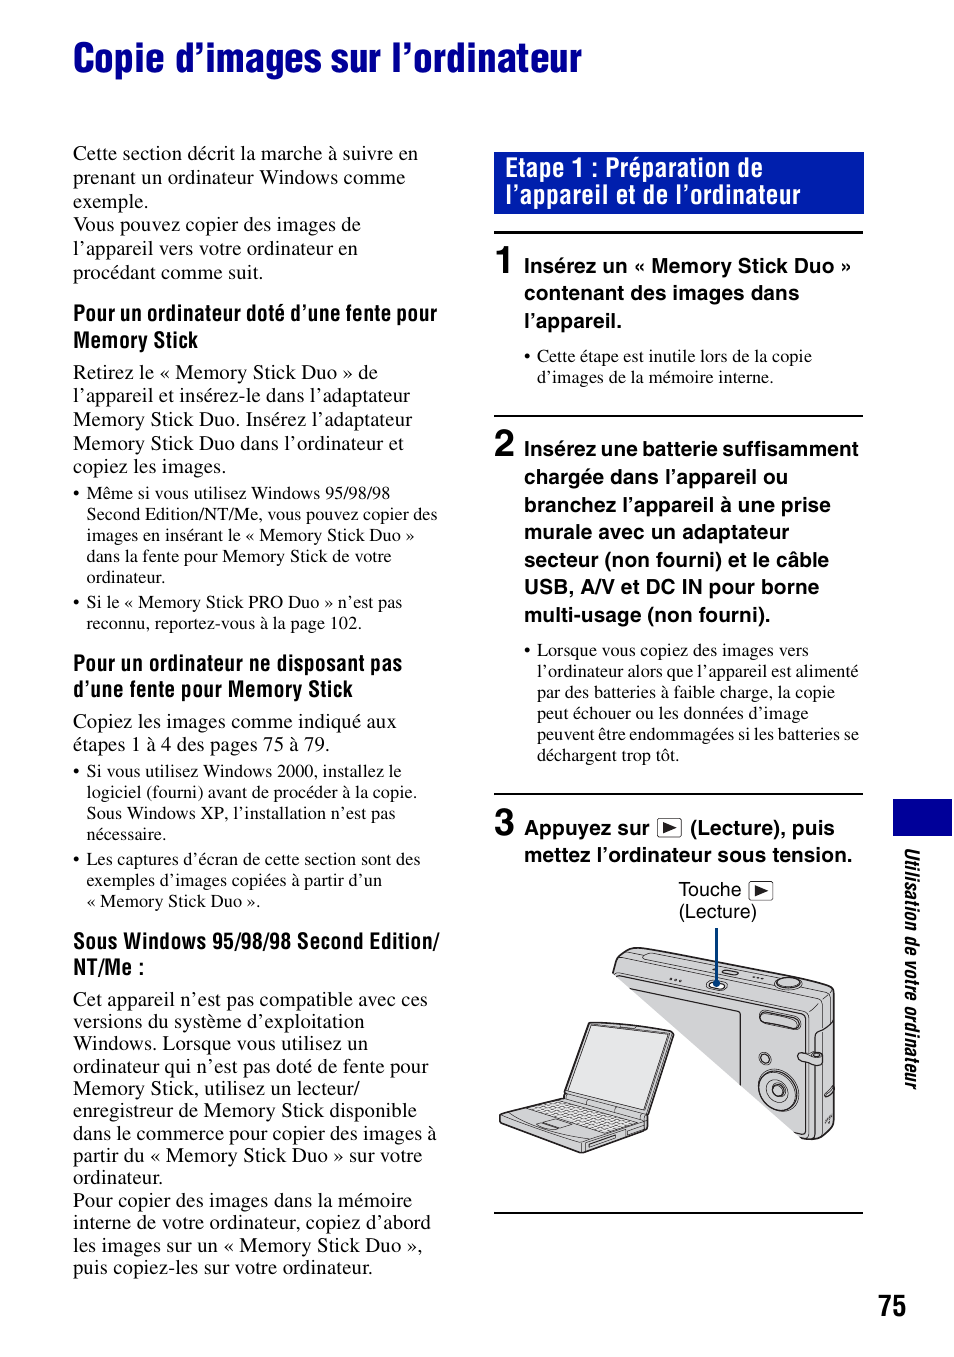 Copie d’images sur l’ordinateur | Sony DSC-T20 Manuel d'utilisation | Page 75 / 122